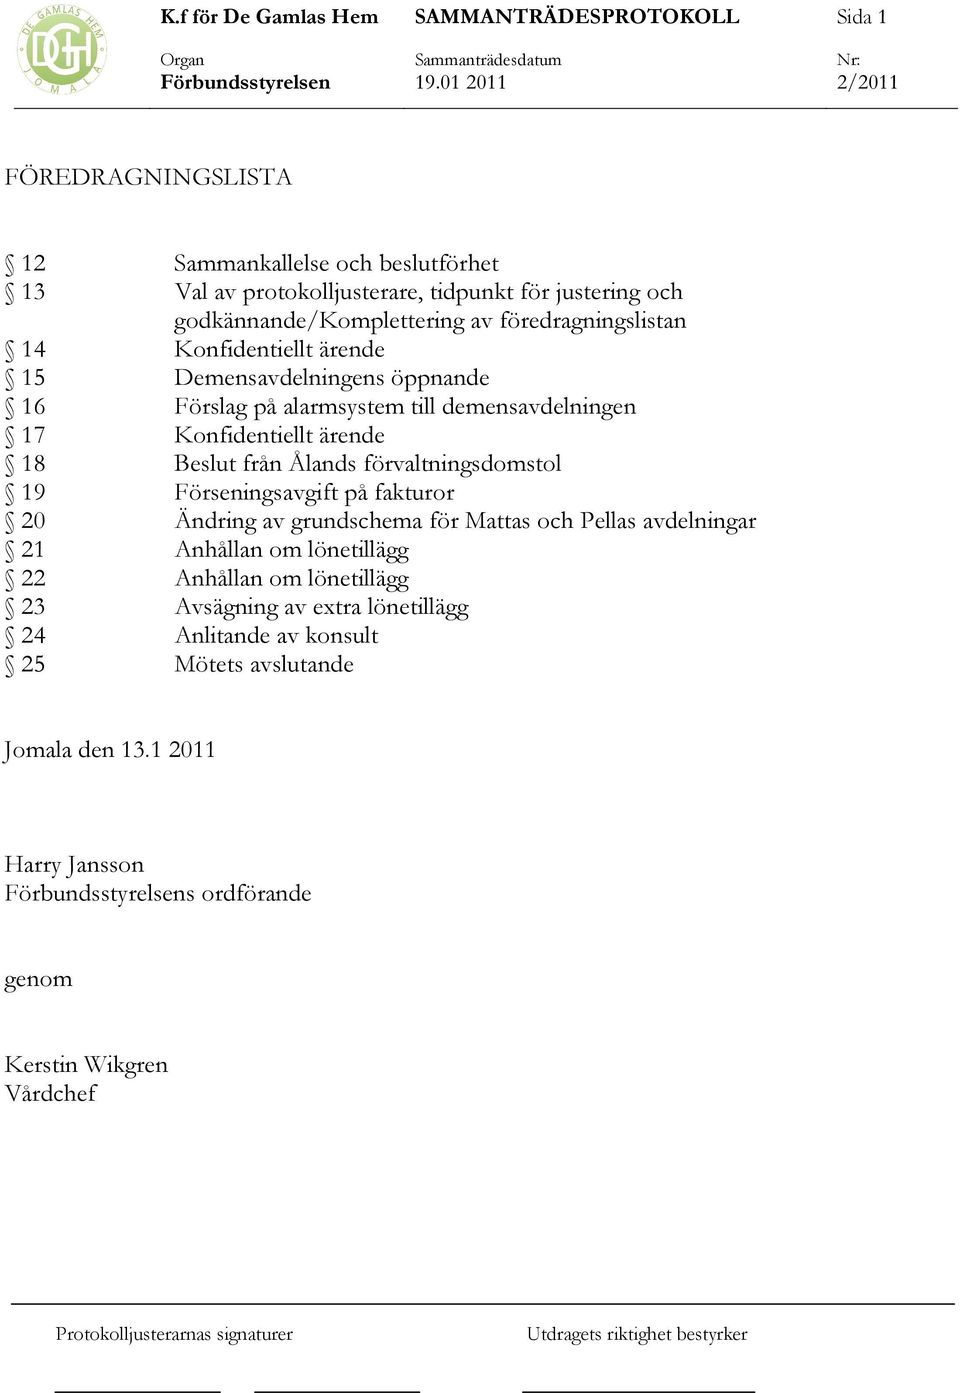 från Ålands förvaltningsdomstol 19 Förseningsavgift på fakturor 20 Ändring av grundschema för Mattas och Pellas avdelningar 21 Anhållan om lönetillägg 22